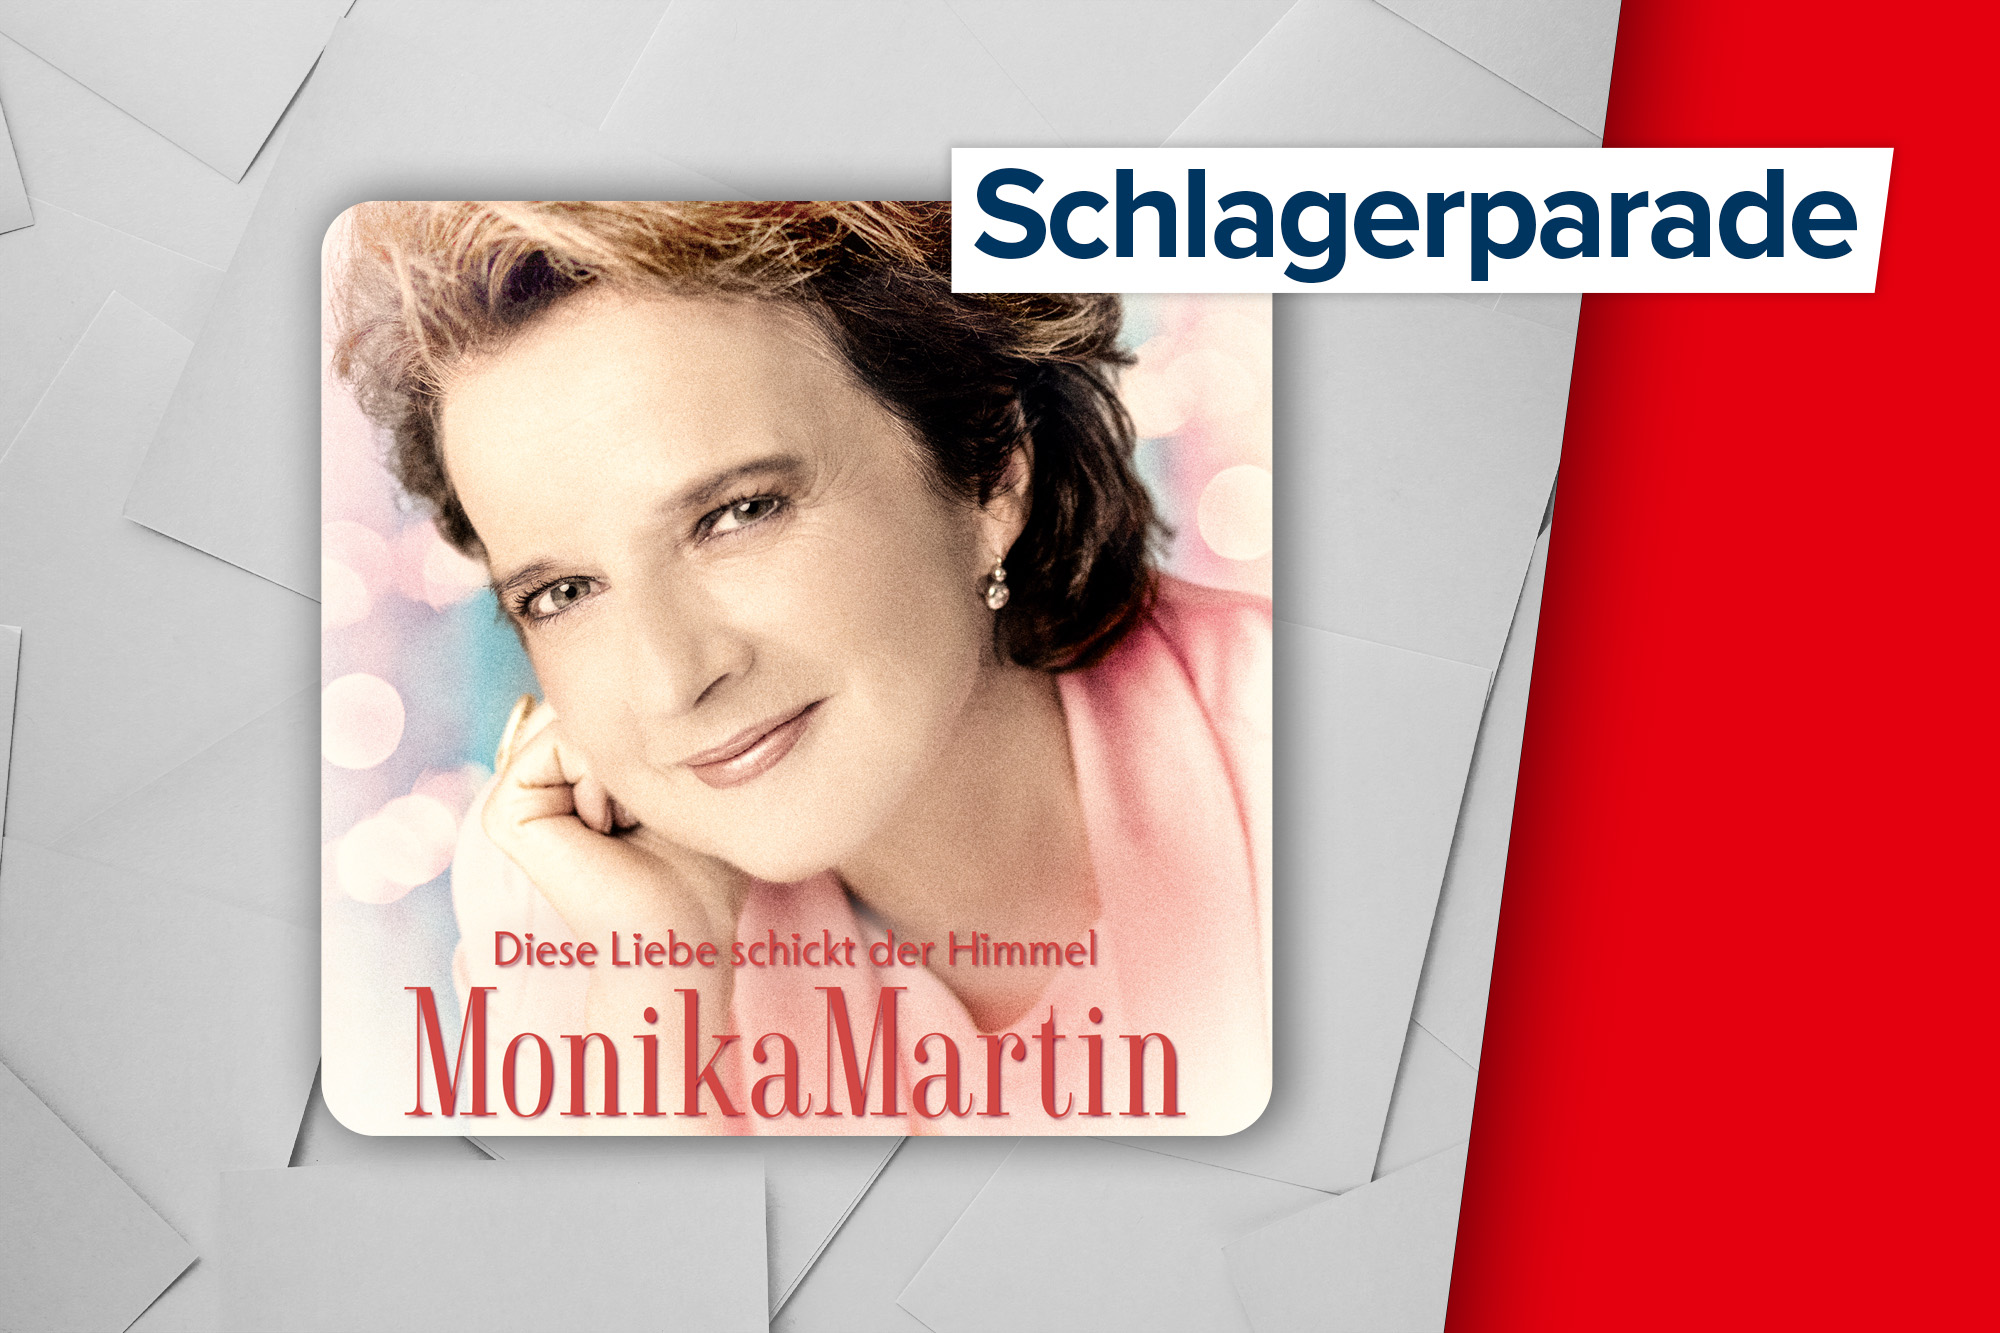 Monika Martin - Diese Liebe schickt der Himmel (Cover: Teleamo)